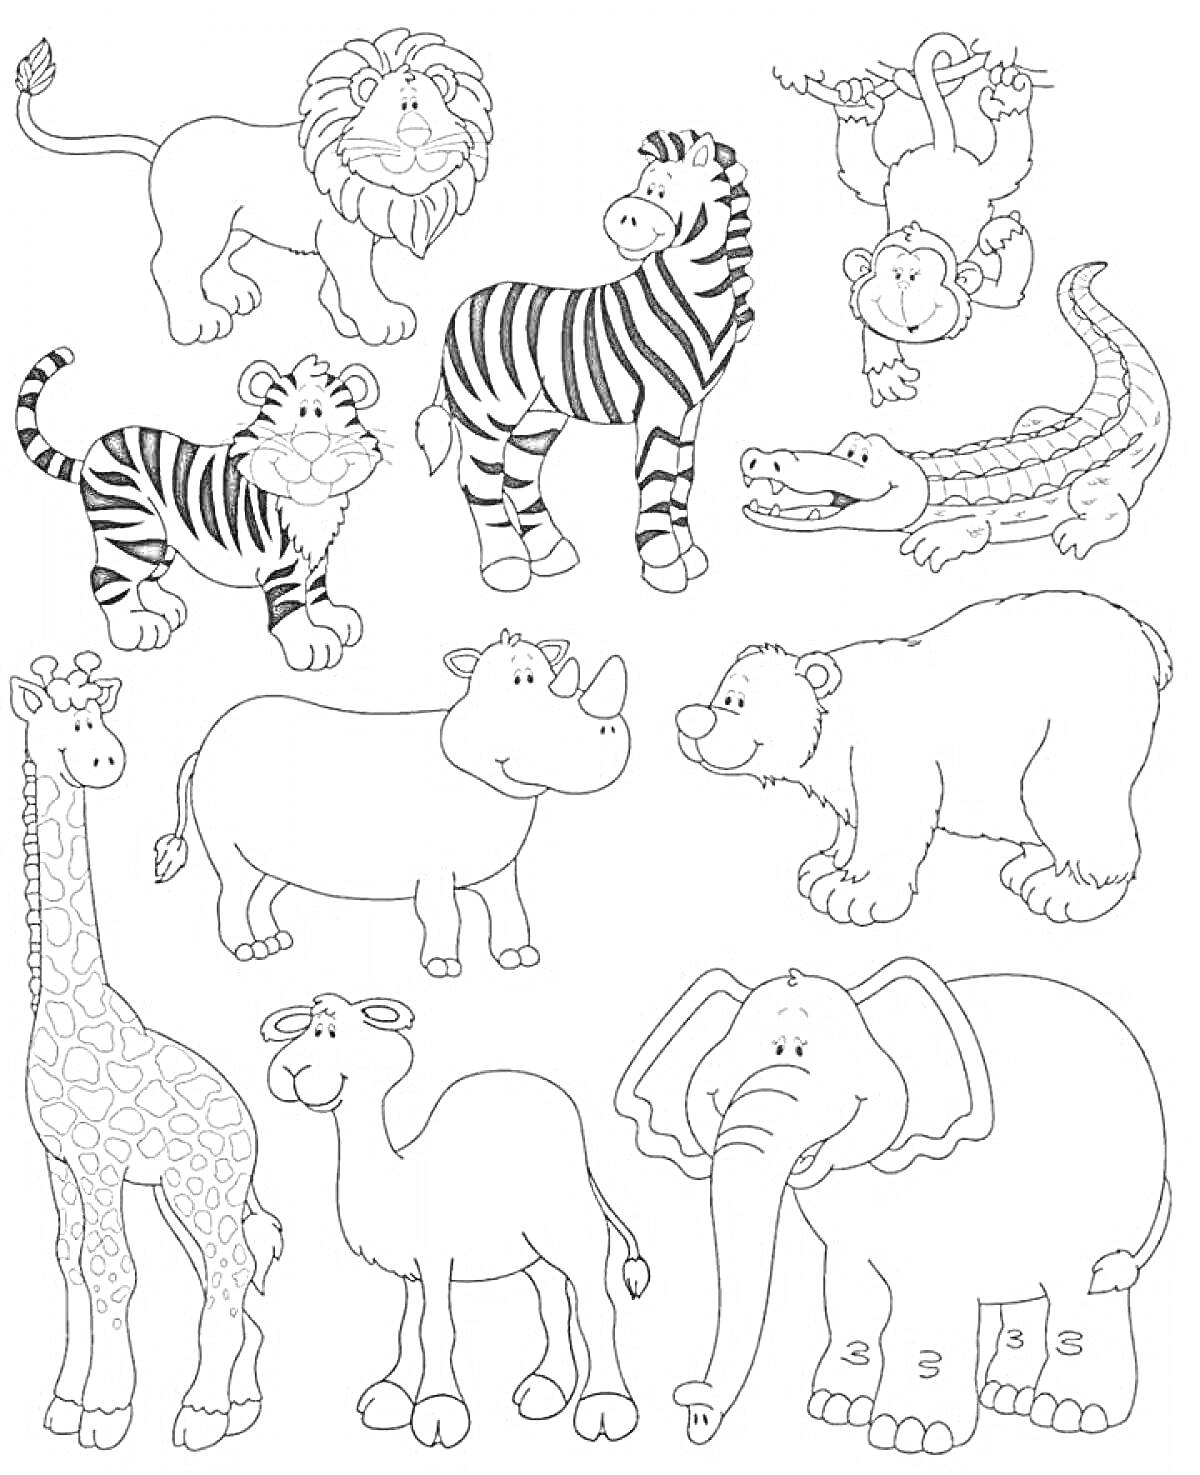 Лев, зебра, обезьяна, тигр, носорог, крокодил, жираф, верблюд, слон, белый медведь